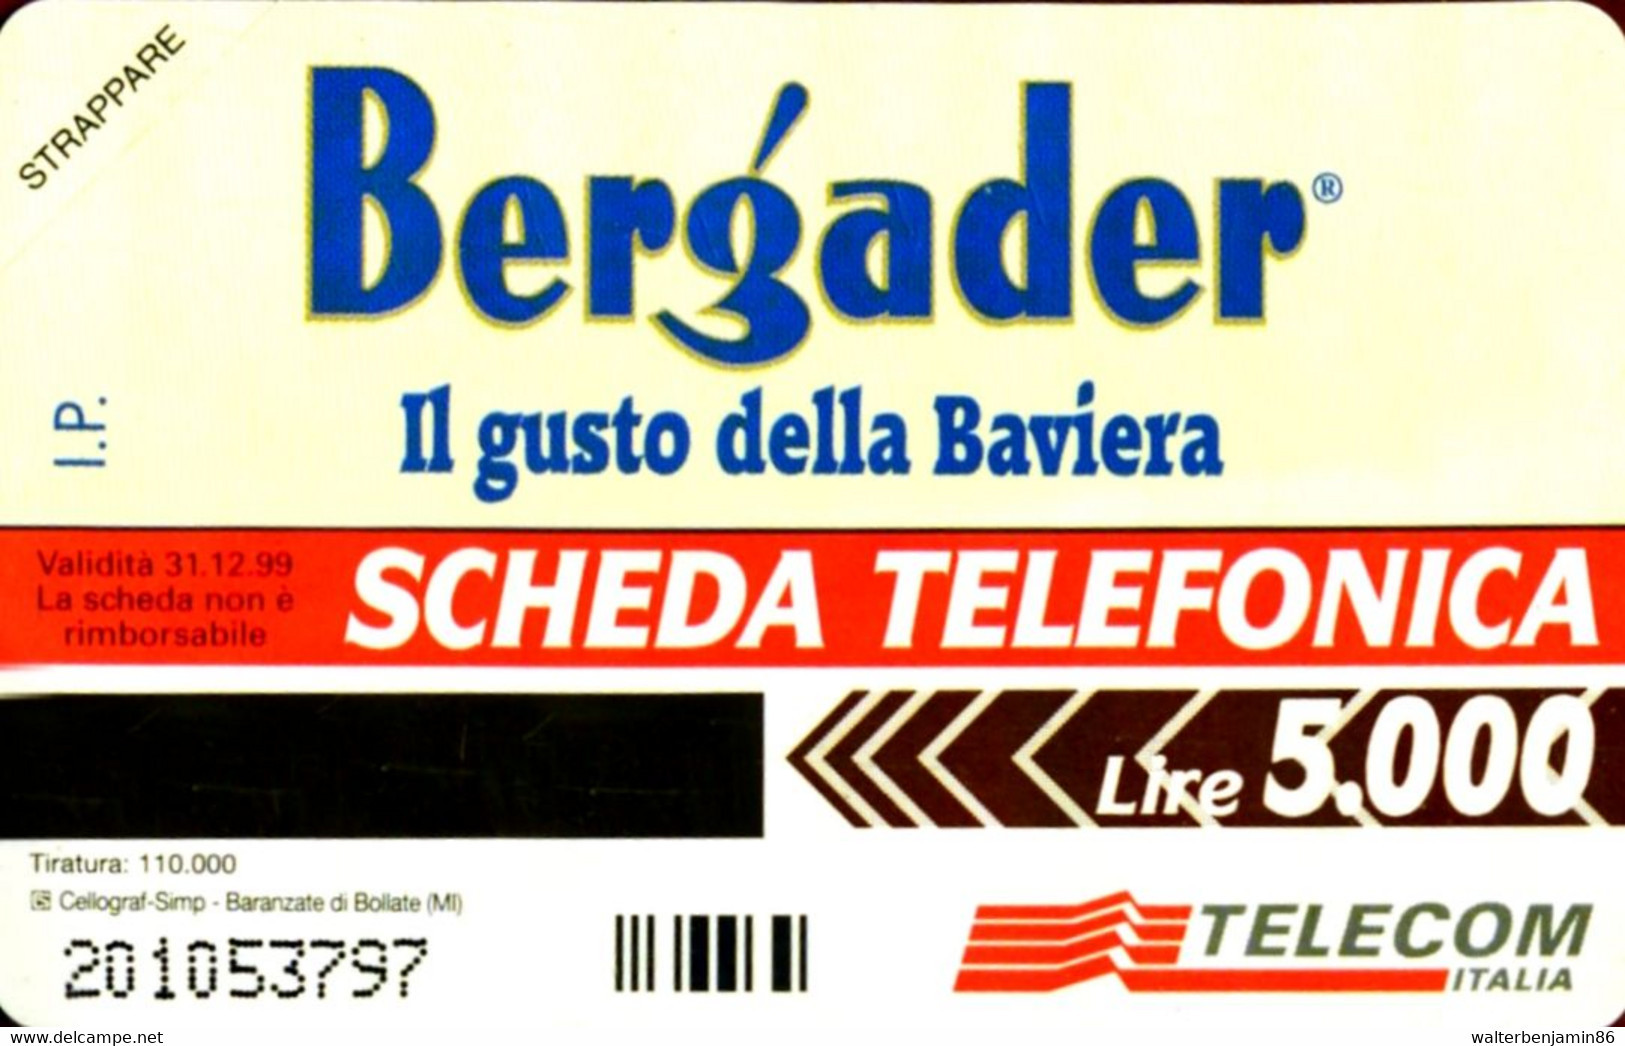 G 691 C&C 2759 SCHEDA TELEFONICA NUOVA MAGNETIZZATA BERGADER - Public Special Or Commemorative